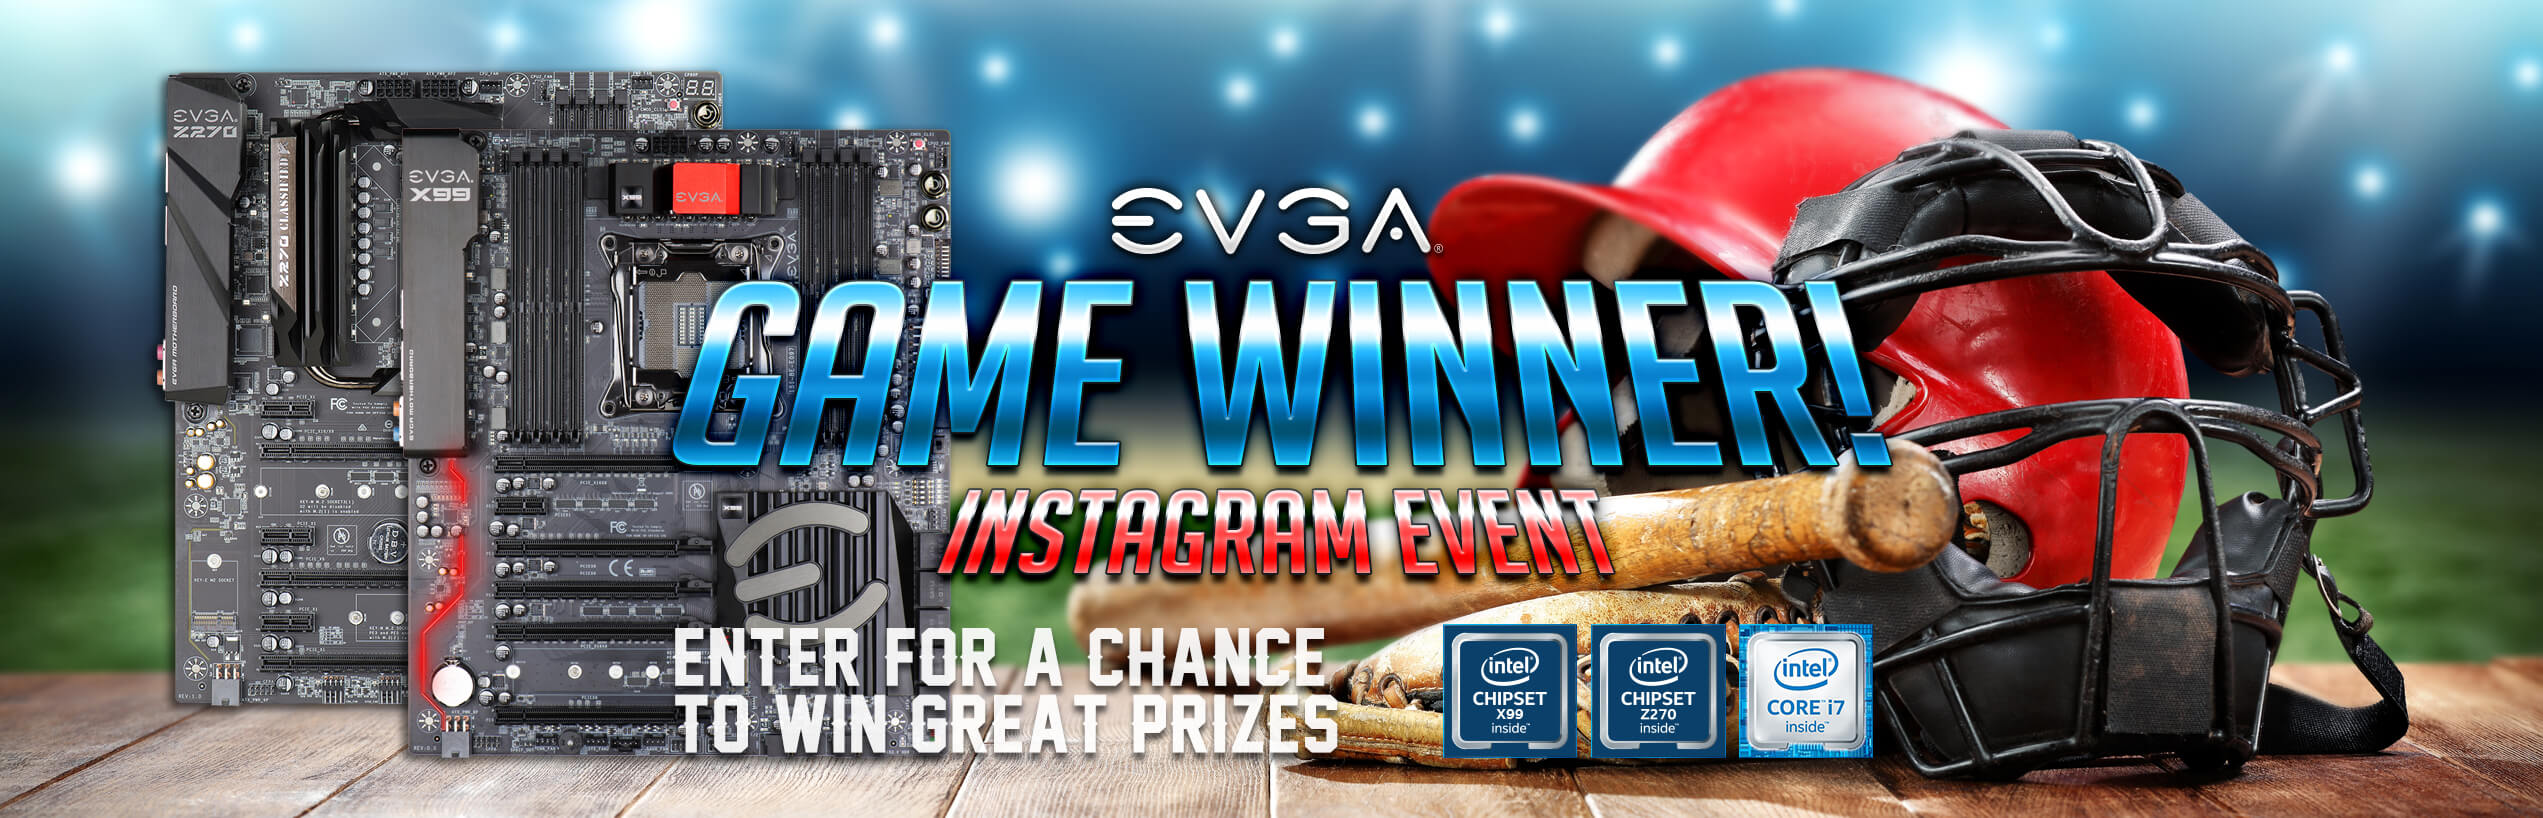 EVGA Game Winner! Instagram Event